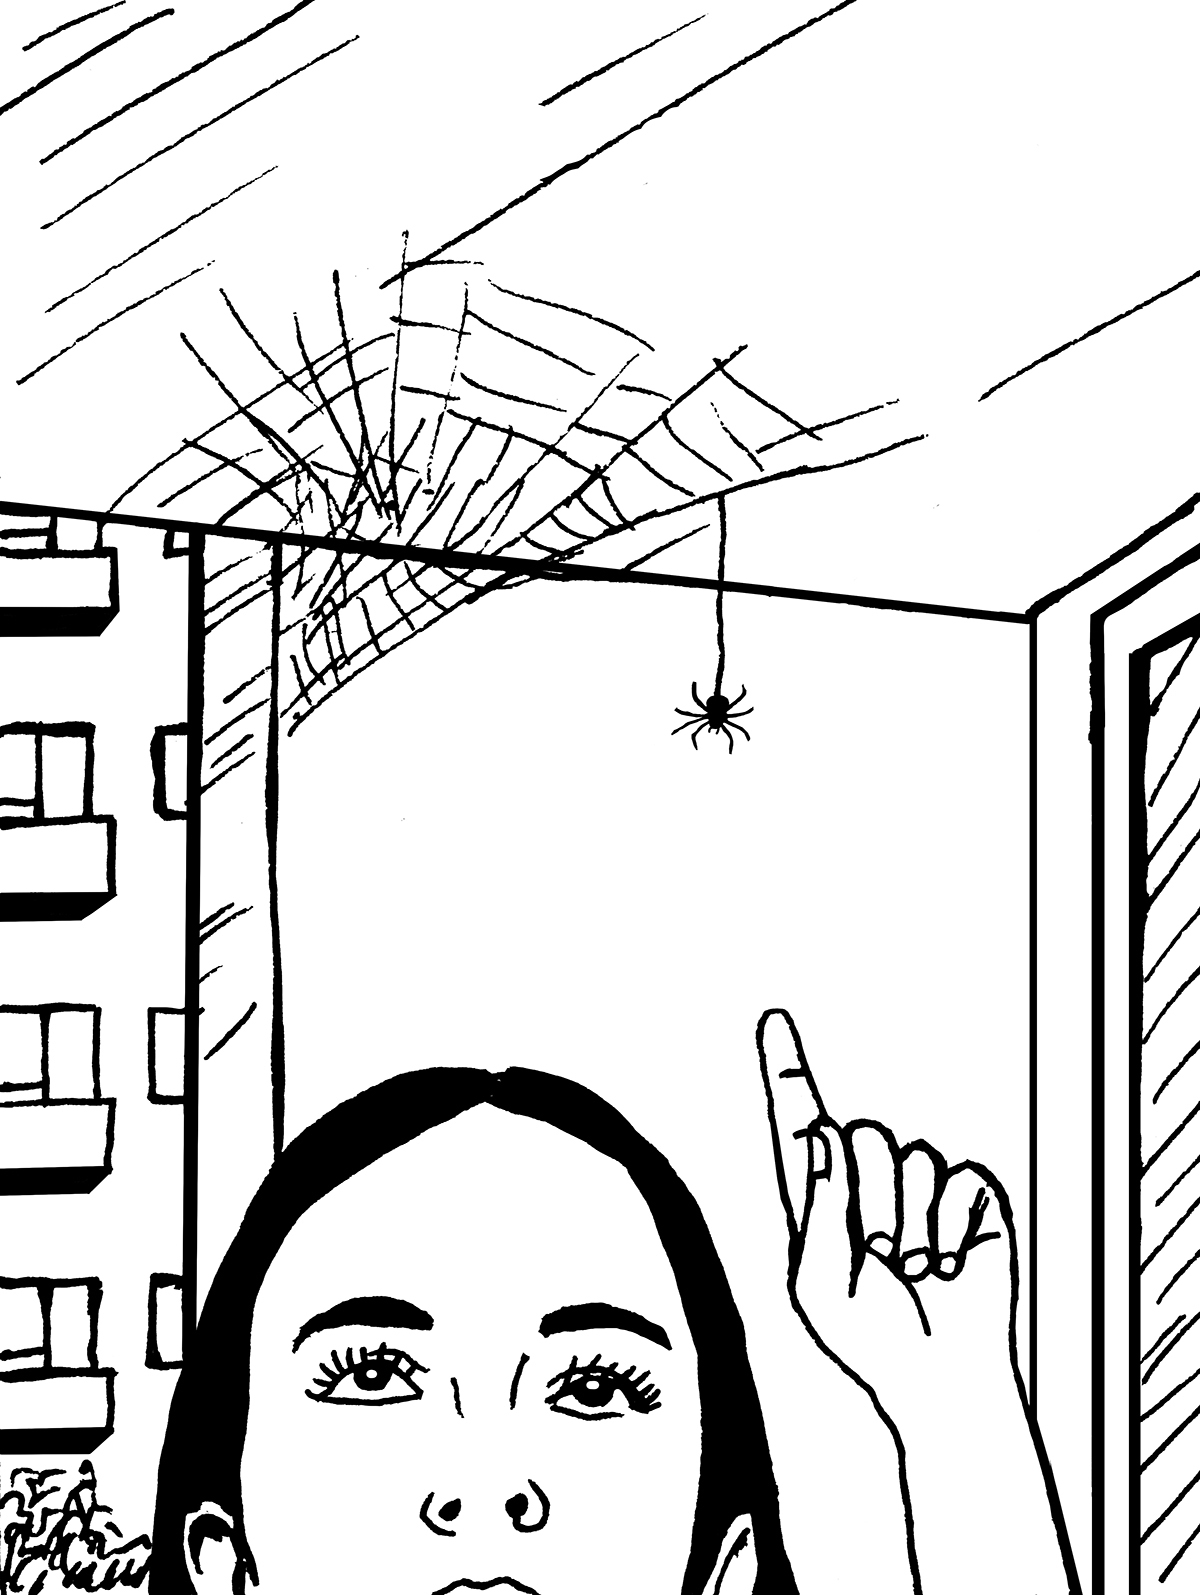 Na pierwszym planie twarz dziewczyny i jej wyciągnięta w górę dłoń. Dziewczyna palcem wskazujacym wskazuje na zwisającego nad jej głową pająka. Pająk zwisa z uplecionej pod sufitem pajęczyny.